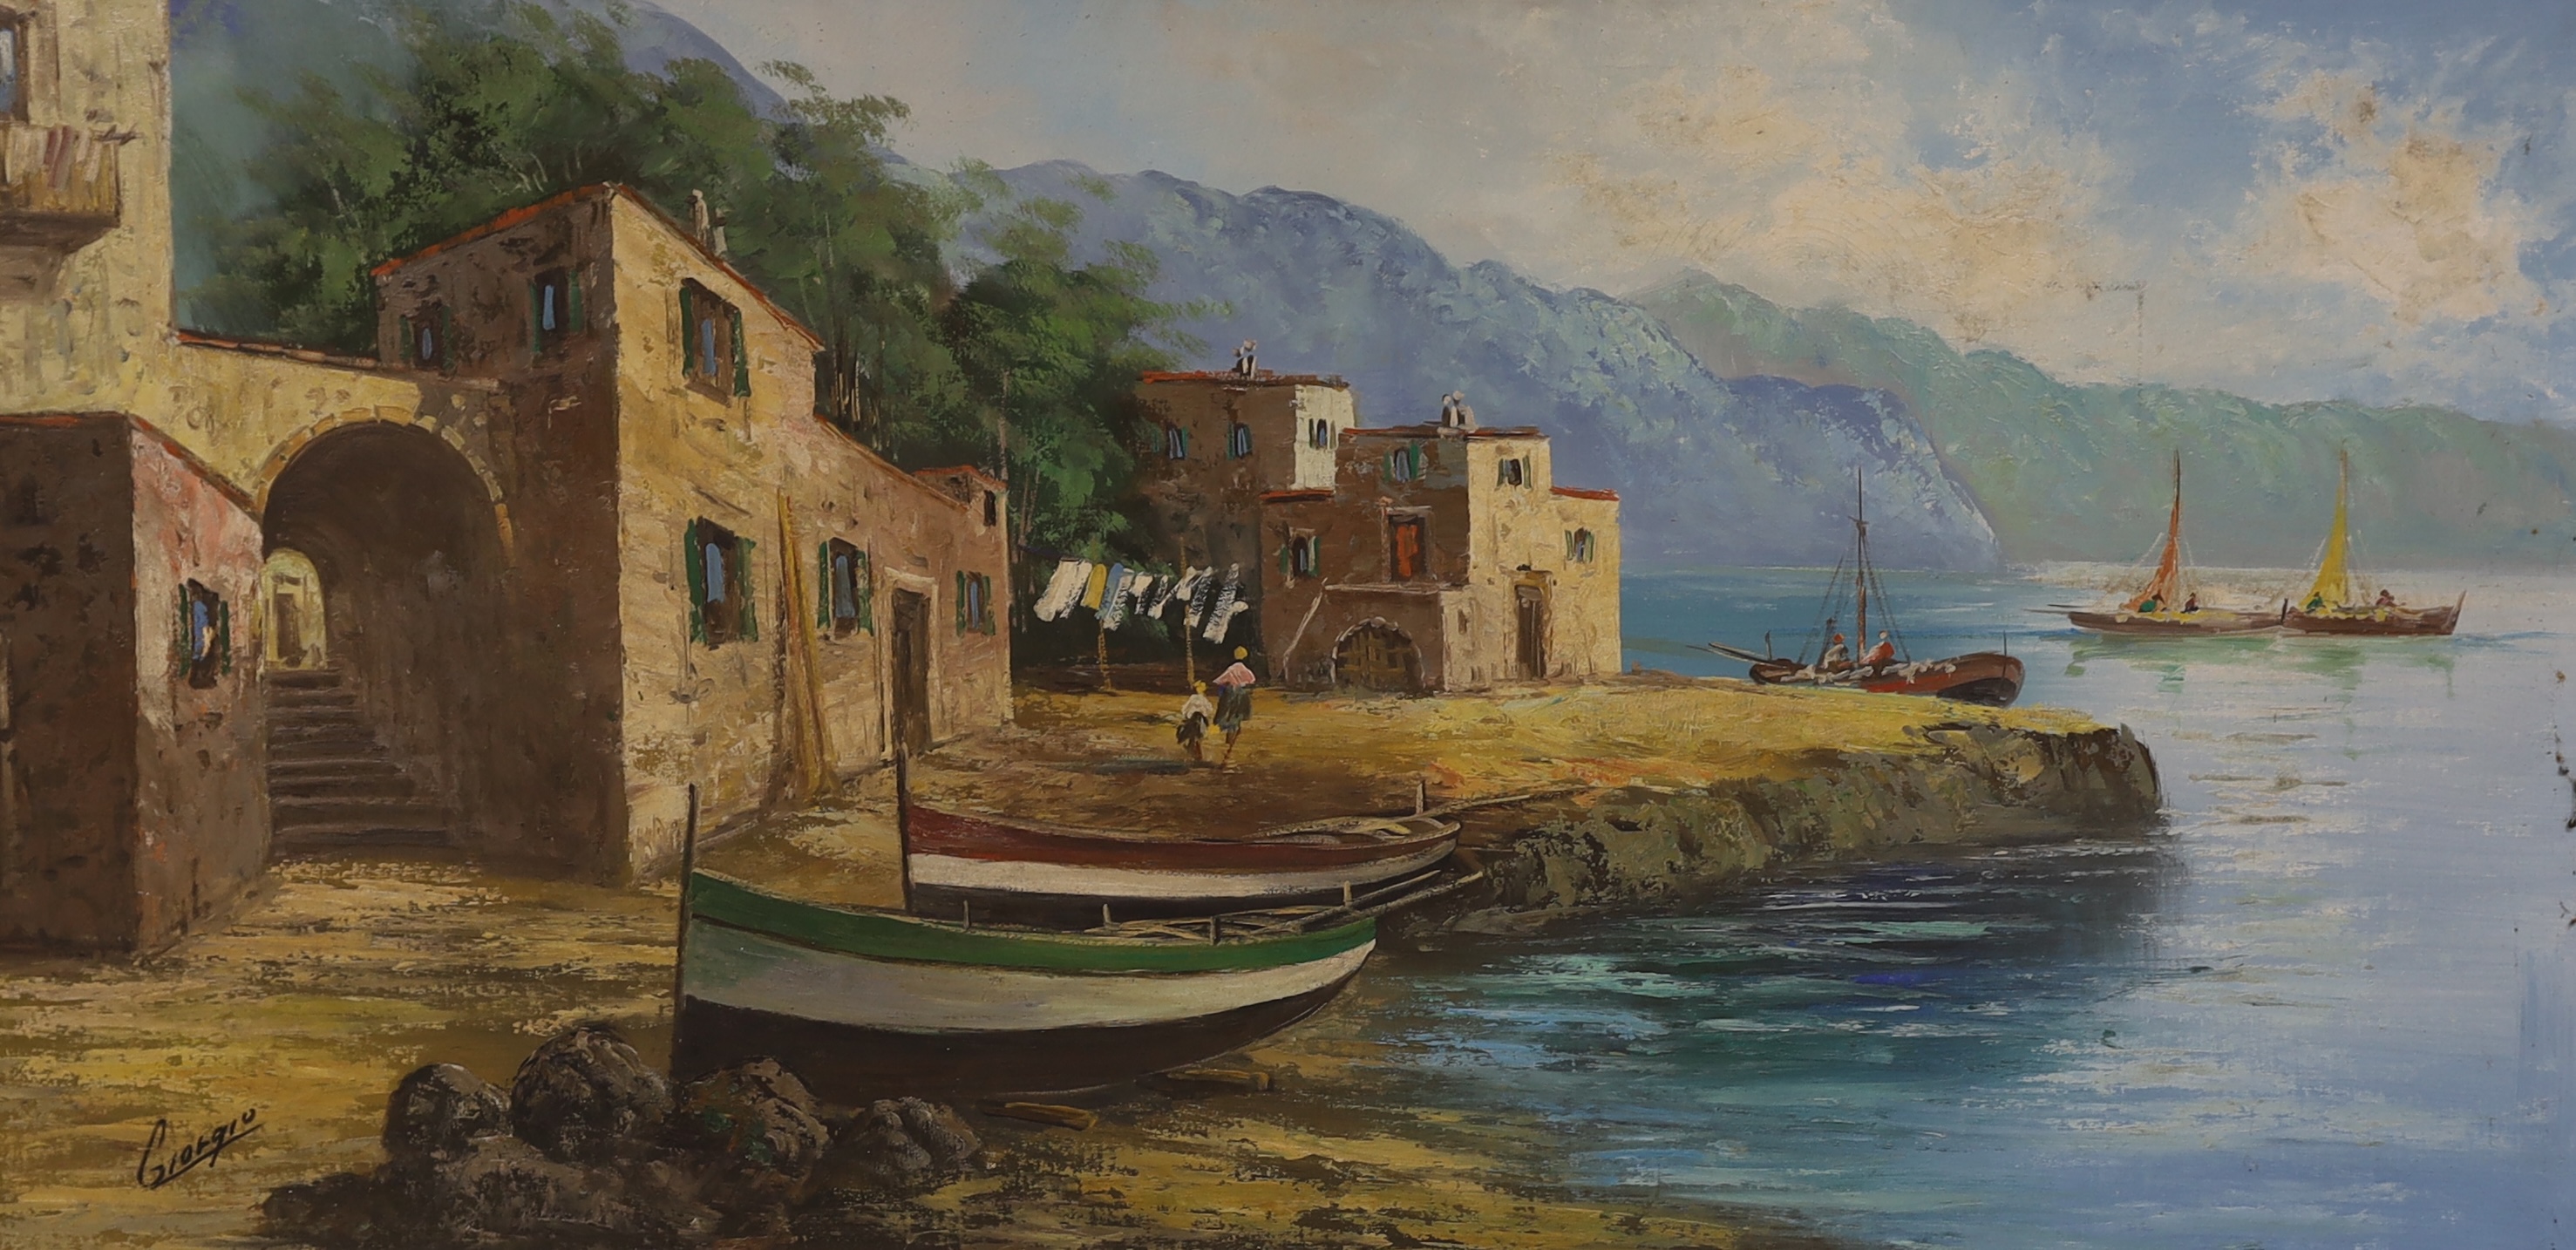 Giorgio, oil on canvas, Italian coastal landscape, signed, 59 x 120cm